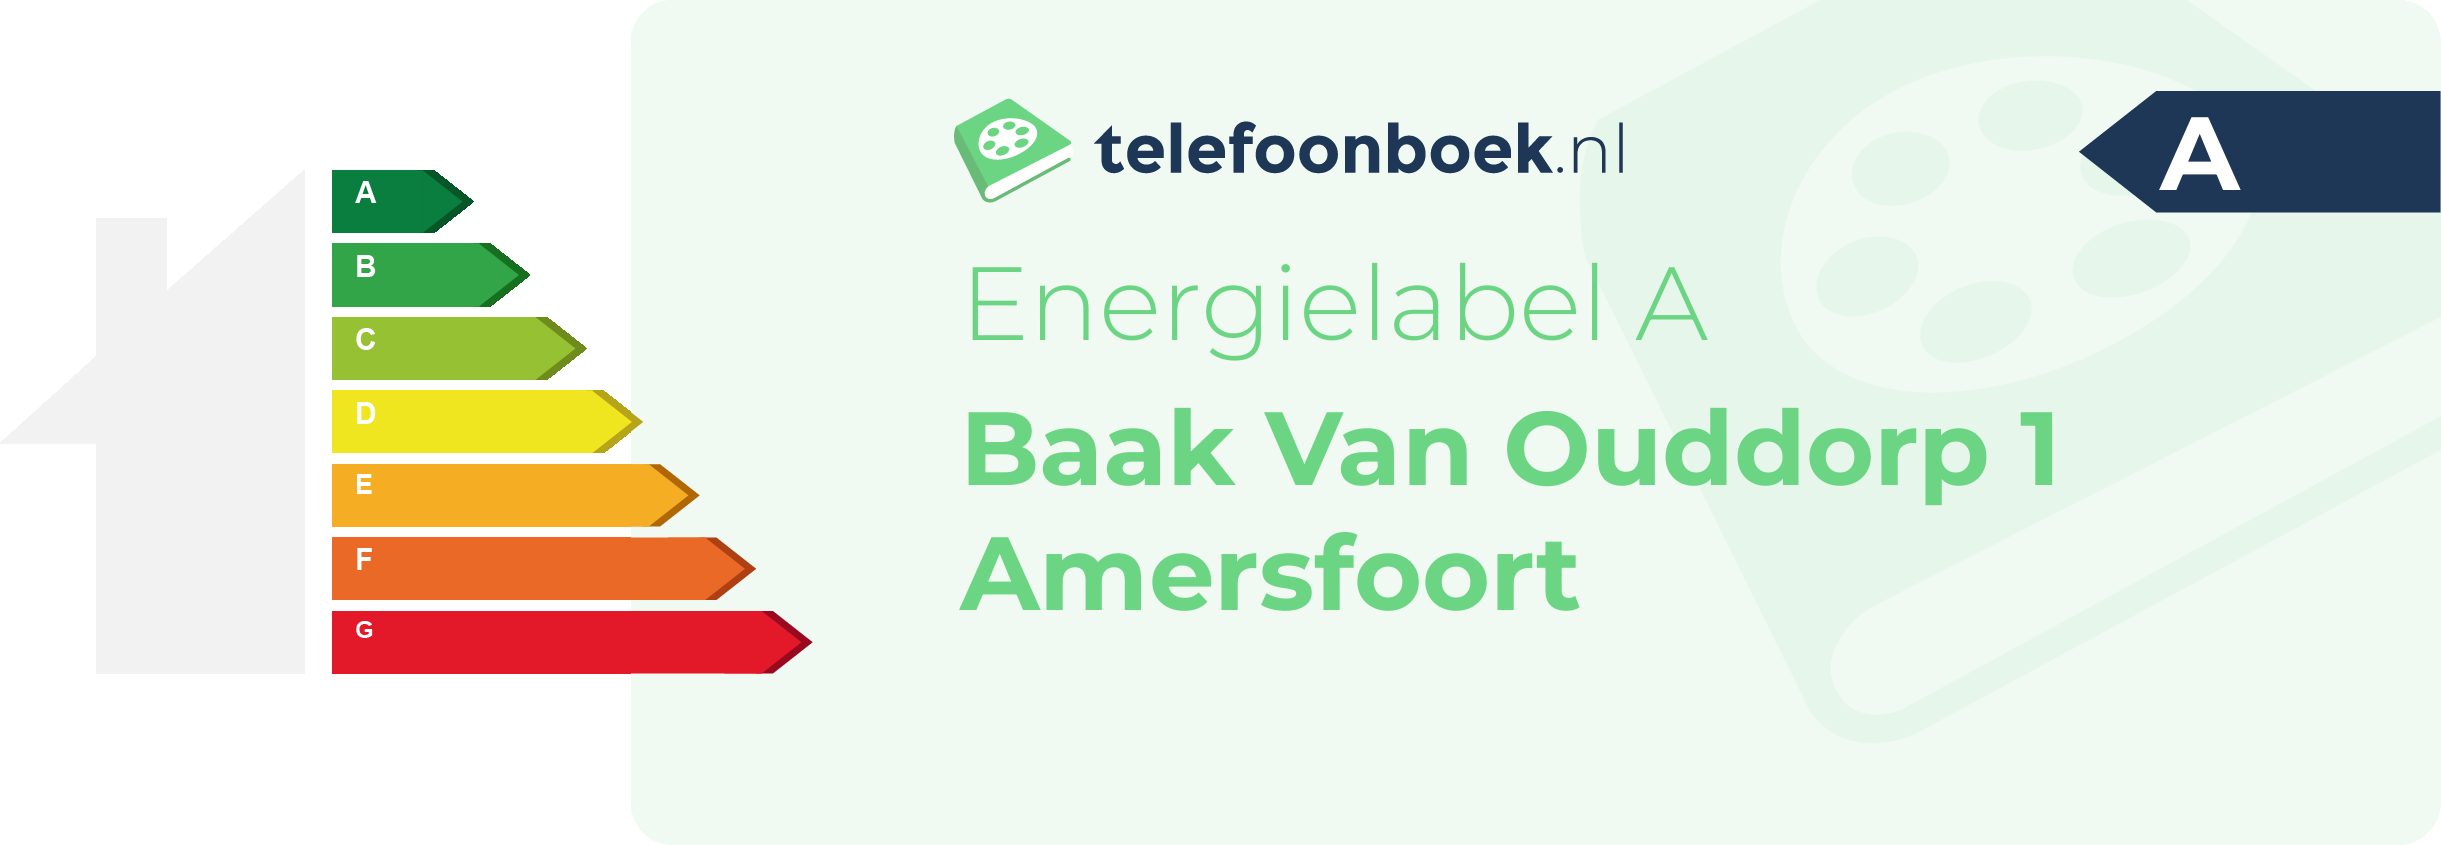 Energielabel Baak Van Ouddorp 1 Amersfoort